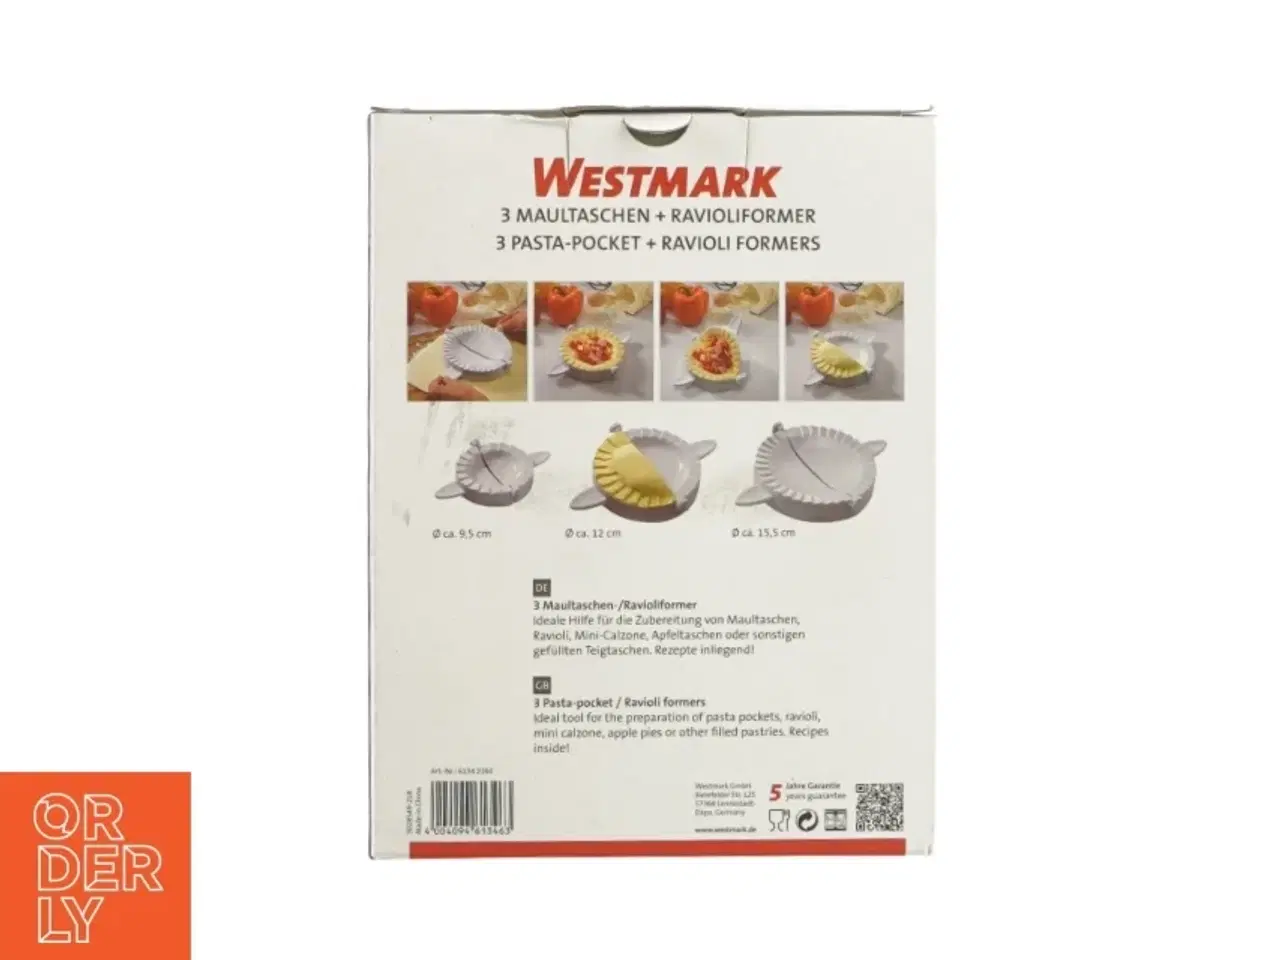 Billede 3 - Pasta-pocket ogravioli forme fra Westmark